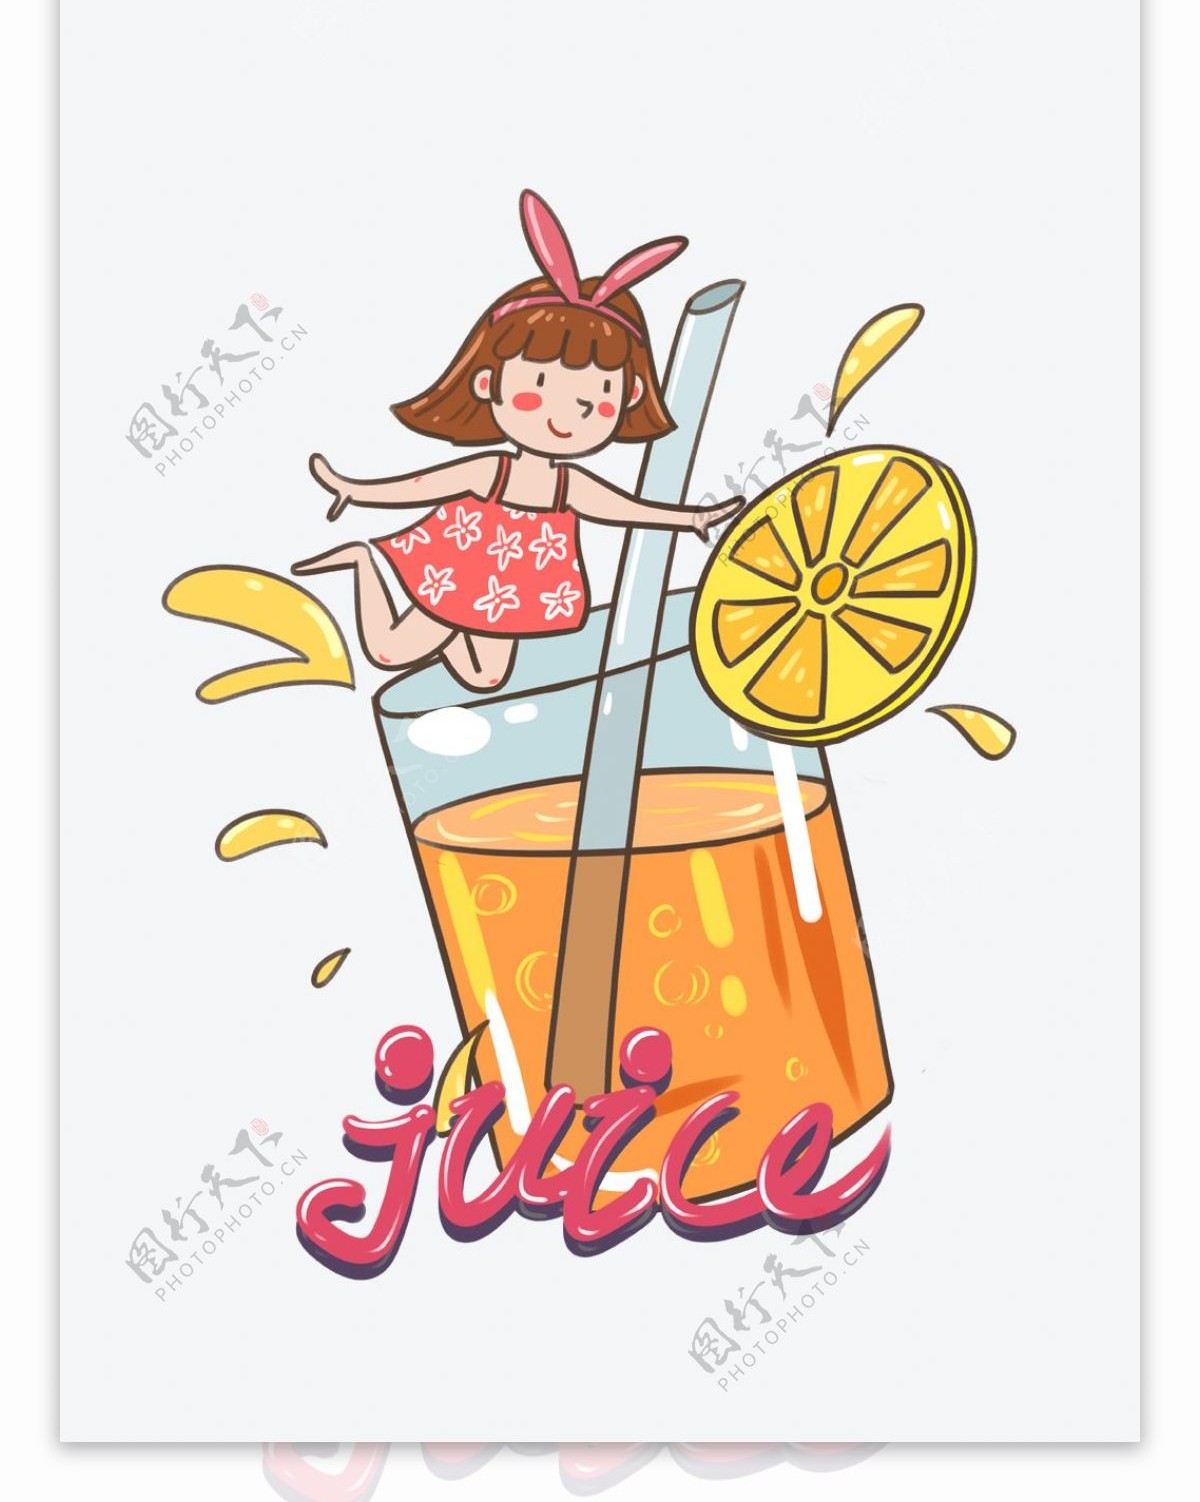 帆布袋包装夏日冰爽系列橙汁和女孩可爱卡通